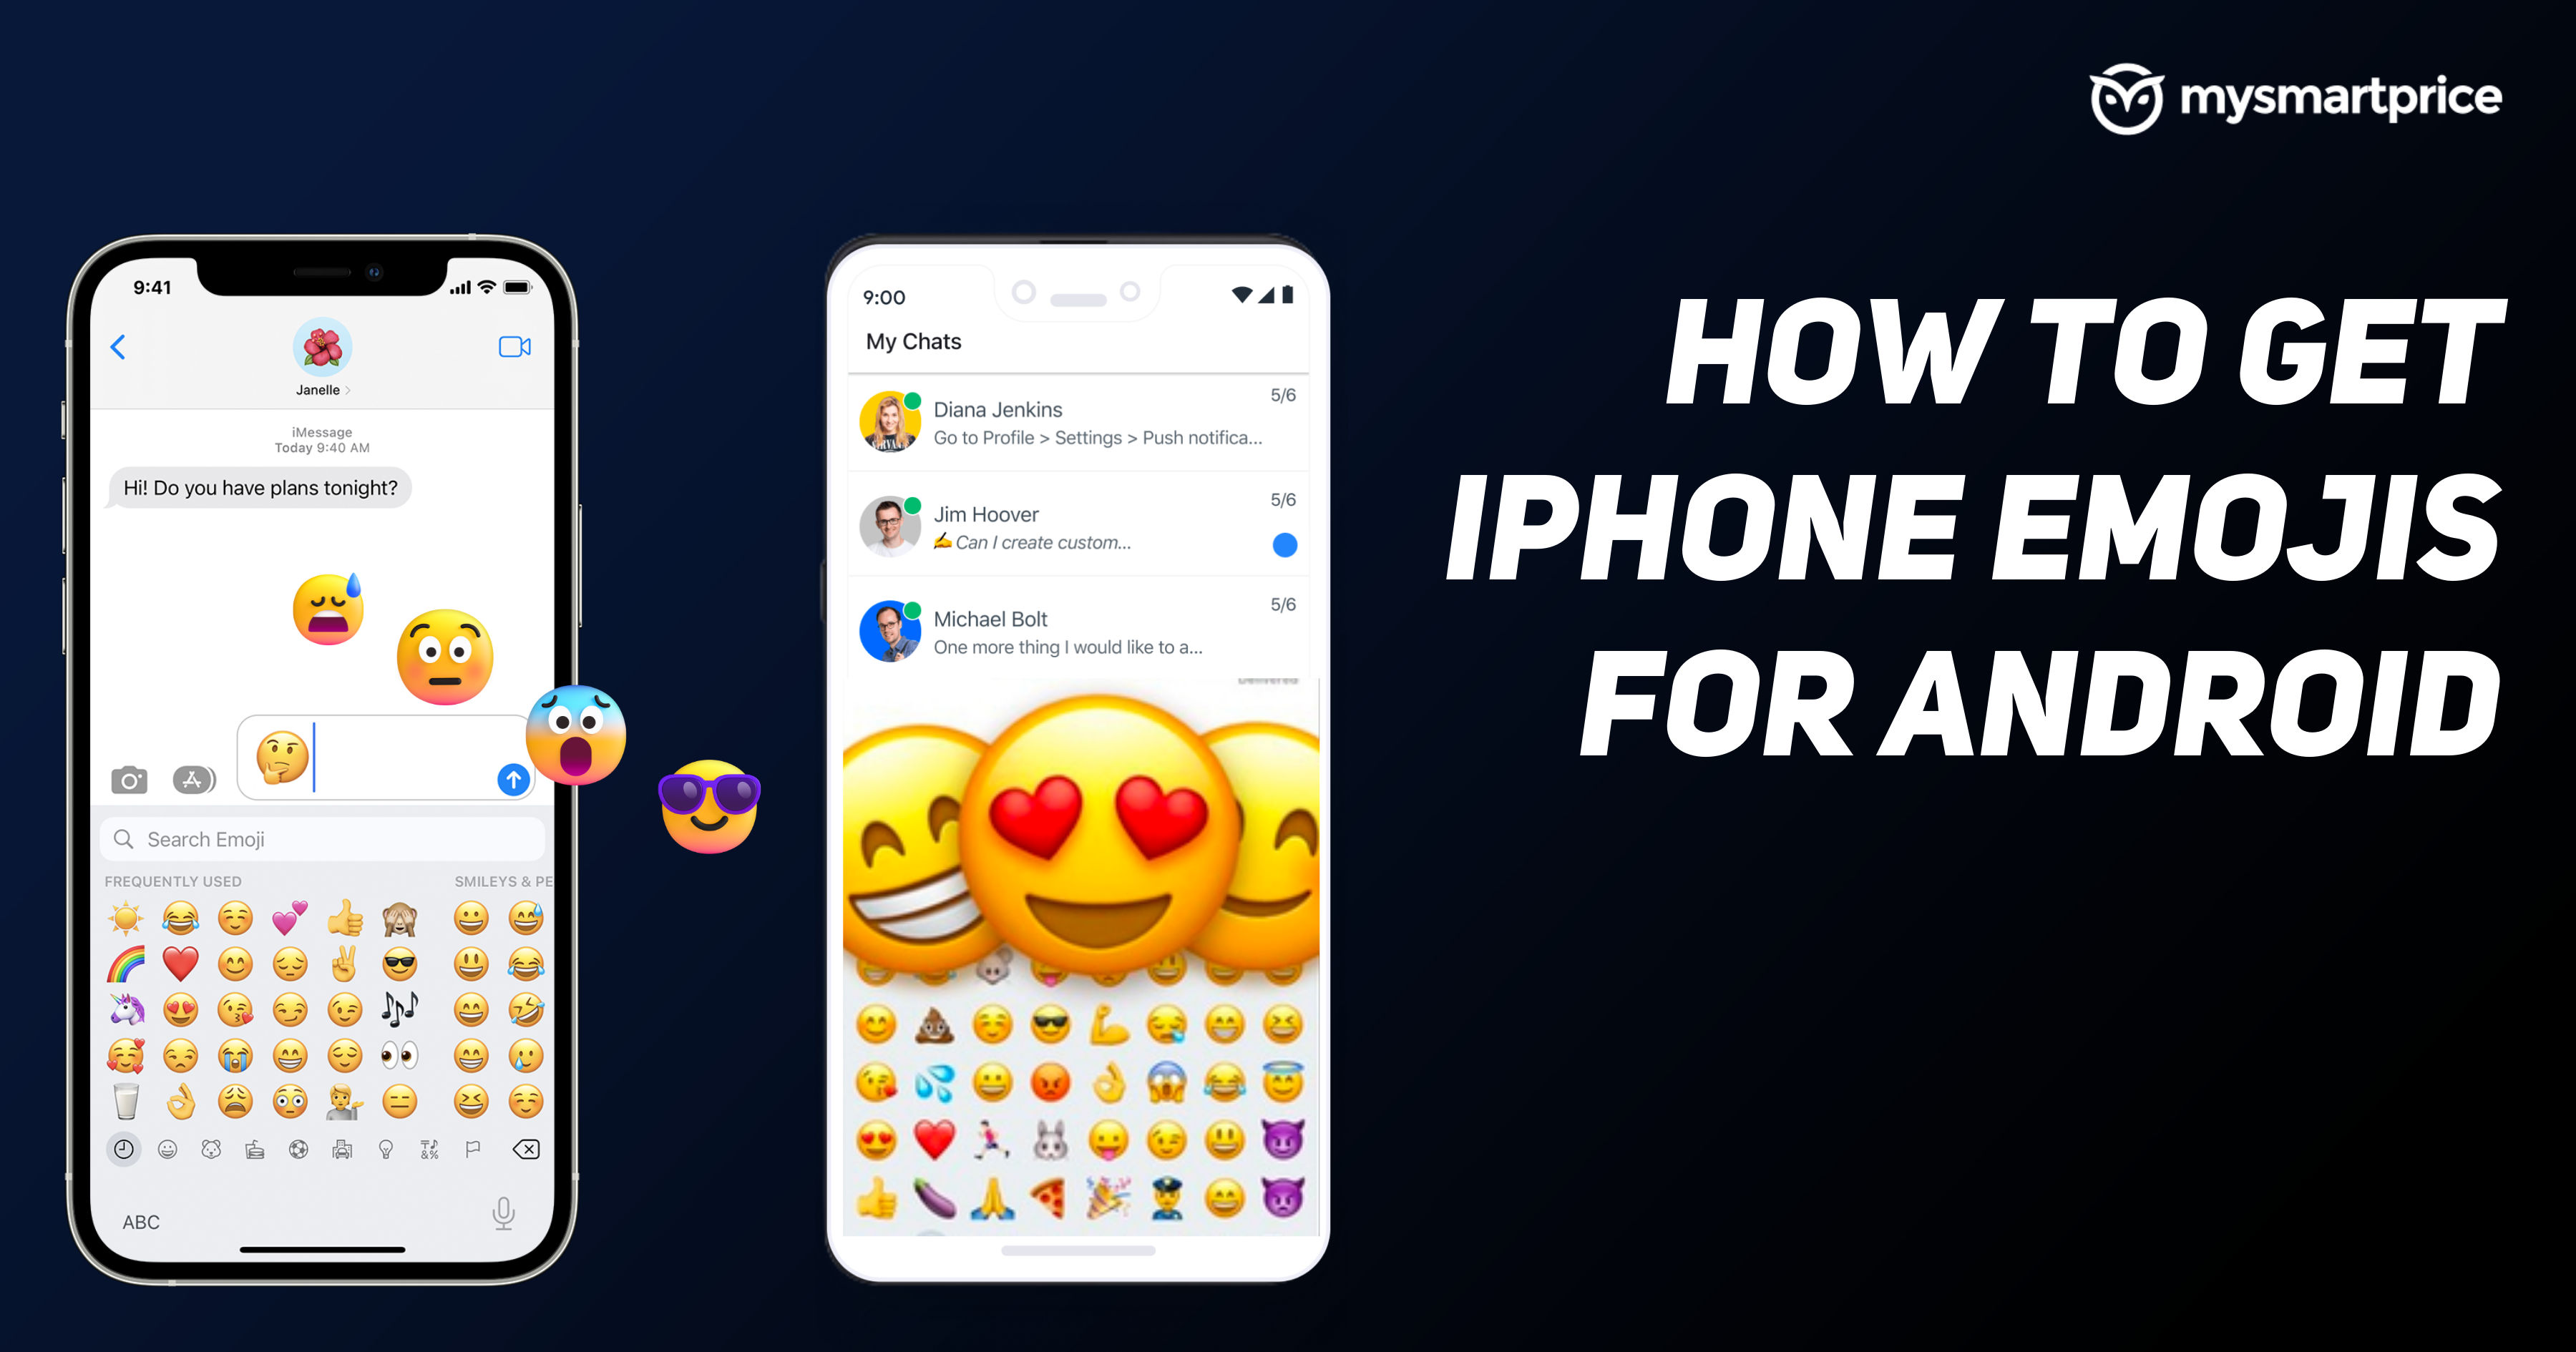 Biểu tượng cảm xúc iPhone cho Android: Bạn không phải là người sử dụng iPhone nhưng lại muốn tận hưởng bộ emoji tuyệt vời của họ? Đừng lo lắng! Bạn có thể tải và sử dụng biểu tượng cảm xúc iPhone trên điện thoại Android của mình chỉ bằng việc tải xuống ứng dụng phù hợp và cập nhật theo hướng dẫn.